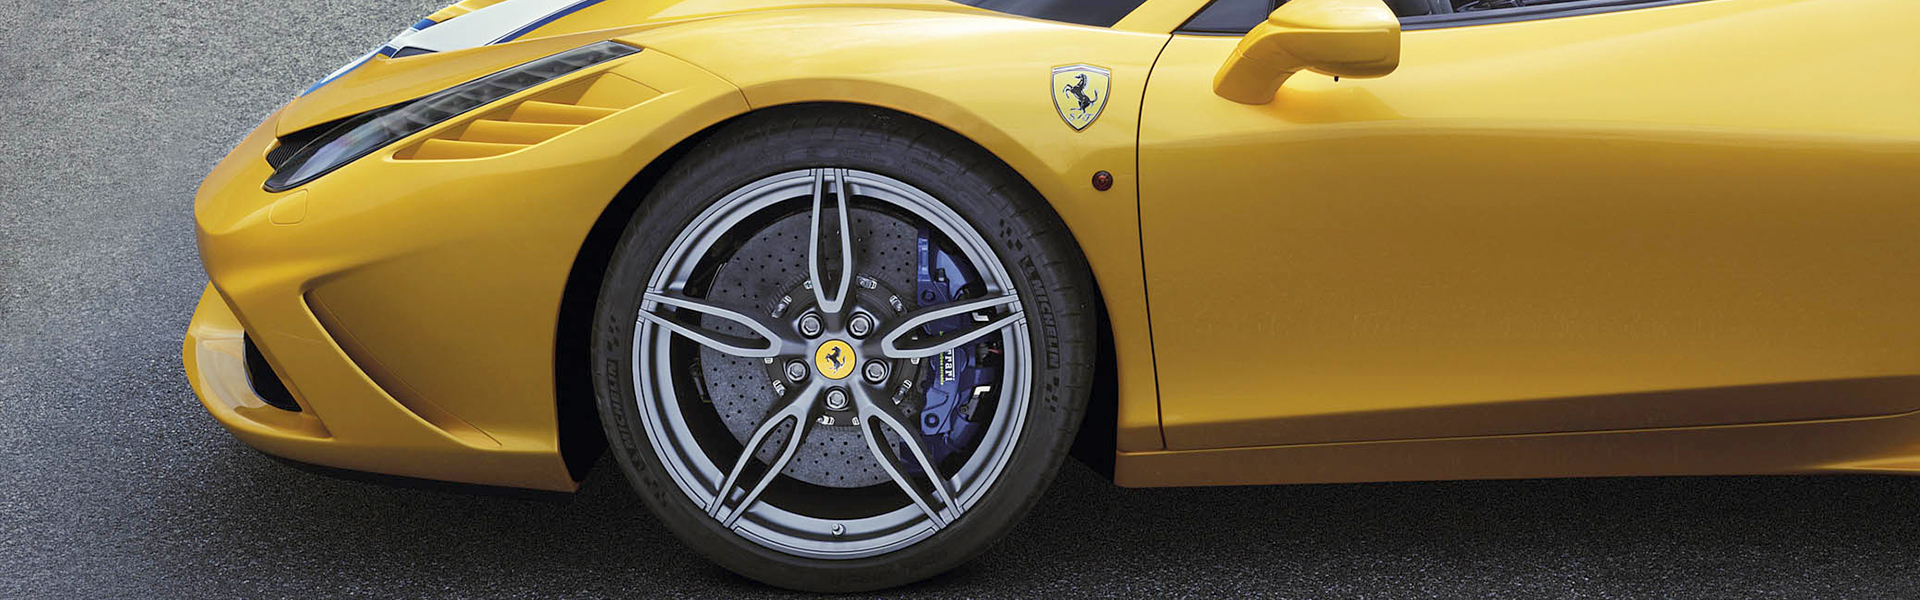 Differentiate your Ferrari with original Ferrari wheels themselves!